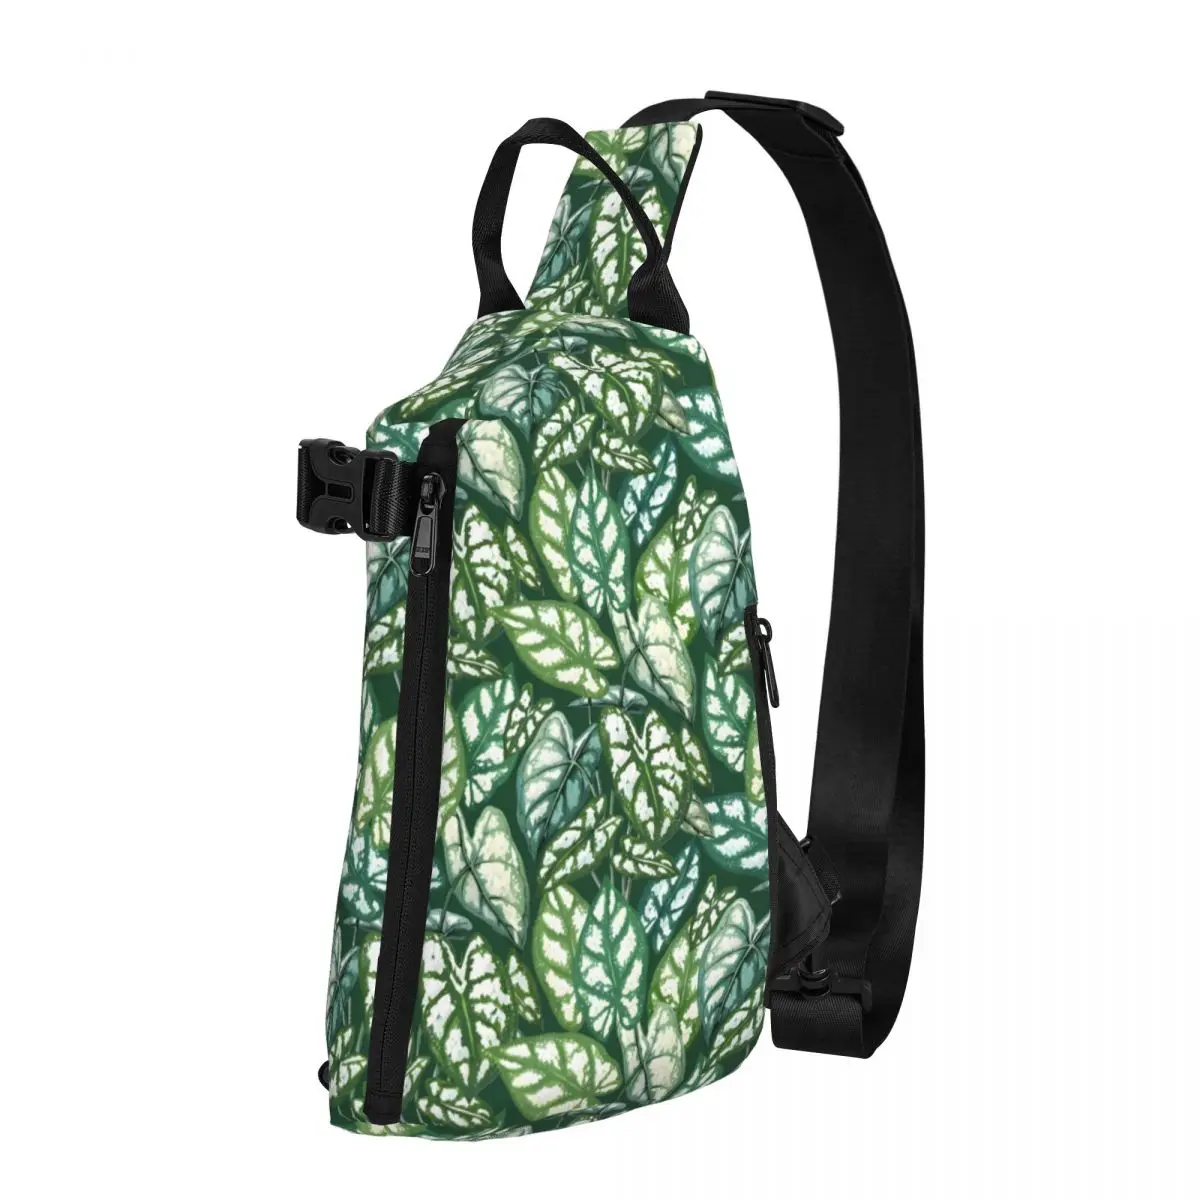 

Нагрудные сумки Green Plant, мужская сумка через плечо с тропическим Рисунком Листьев, забавная деловая сумка через плечо, сумка-слинг в уличном стиле для поездок